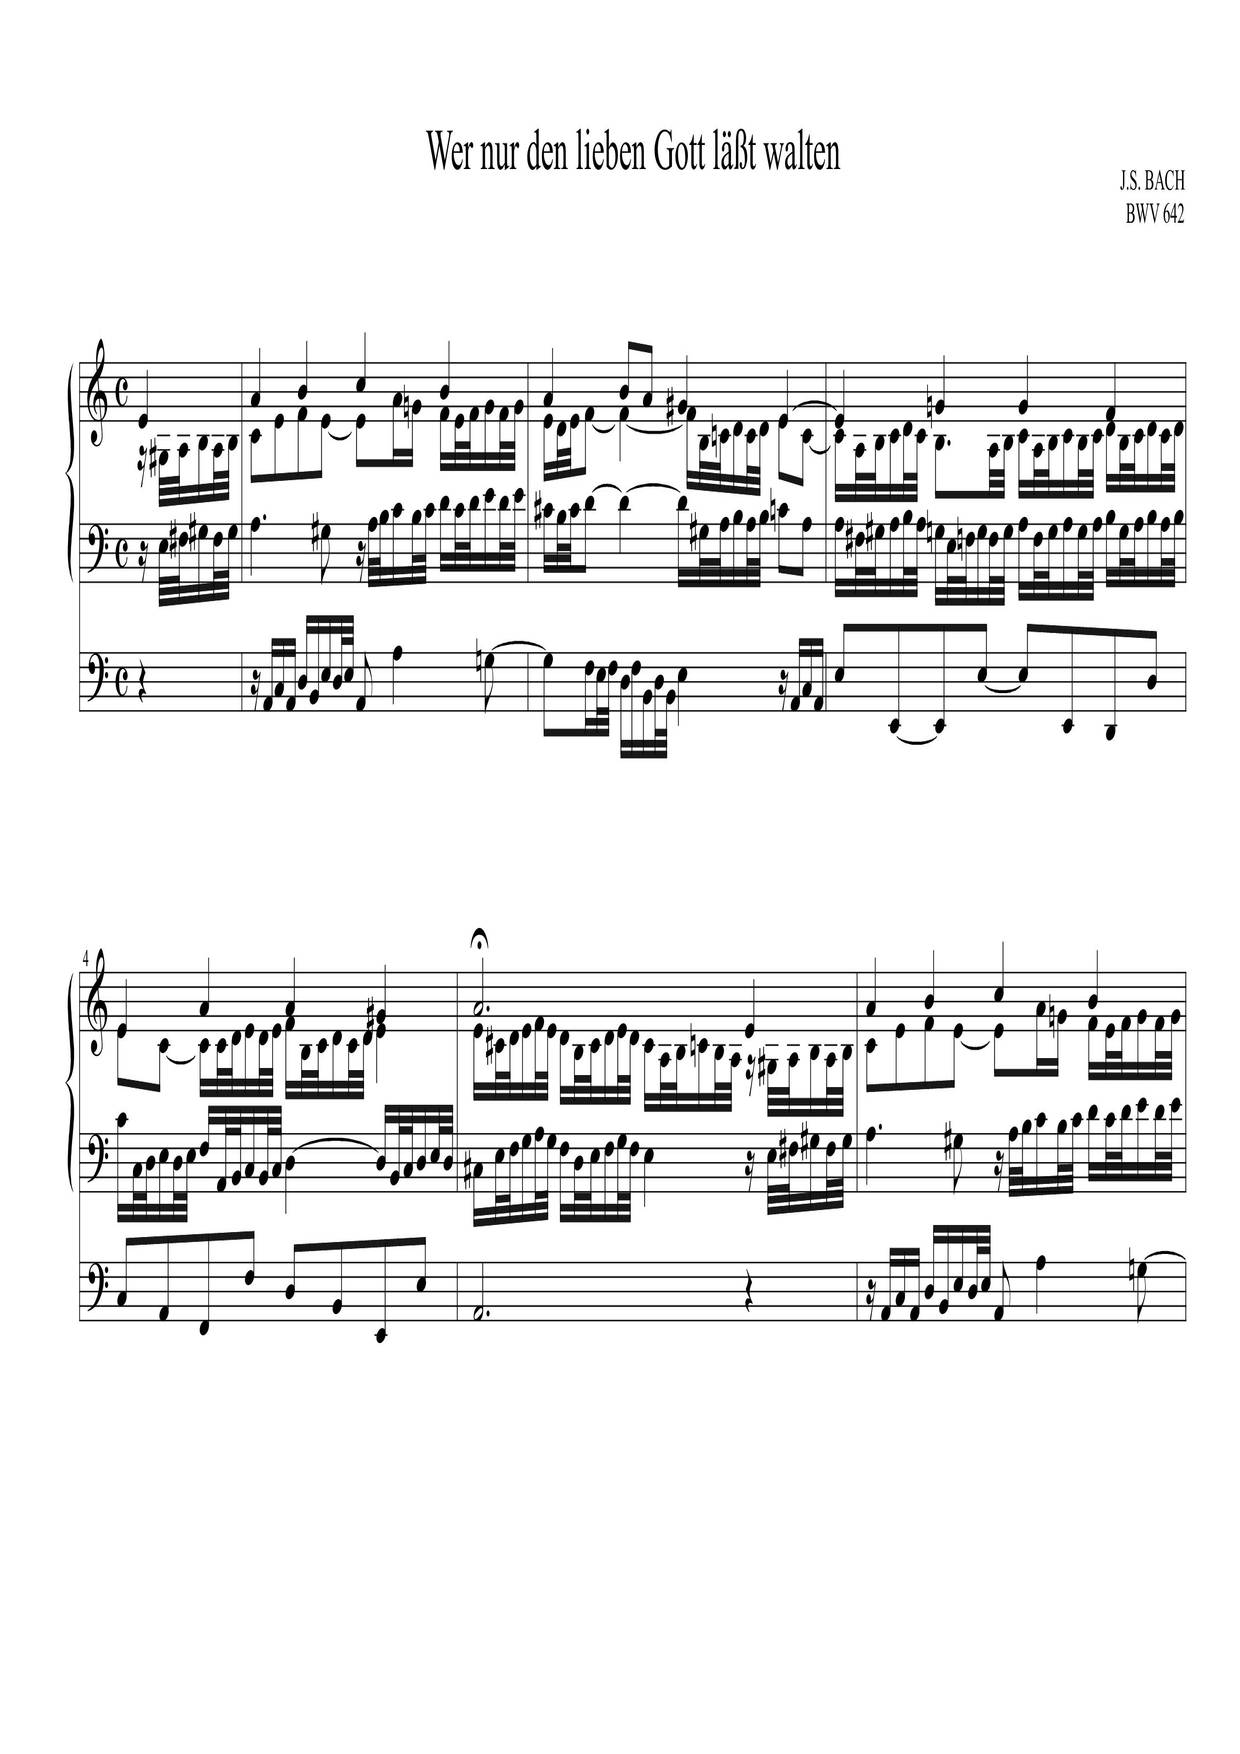 Chorale Prelude 'Wer Nur Den Lieben Gott', BWV 642琴譜